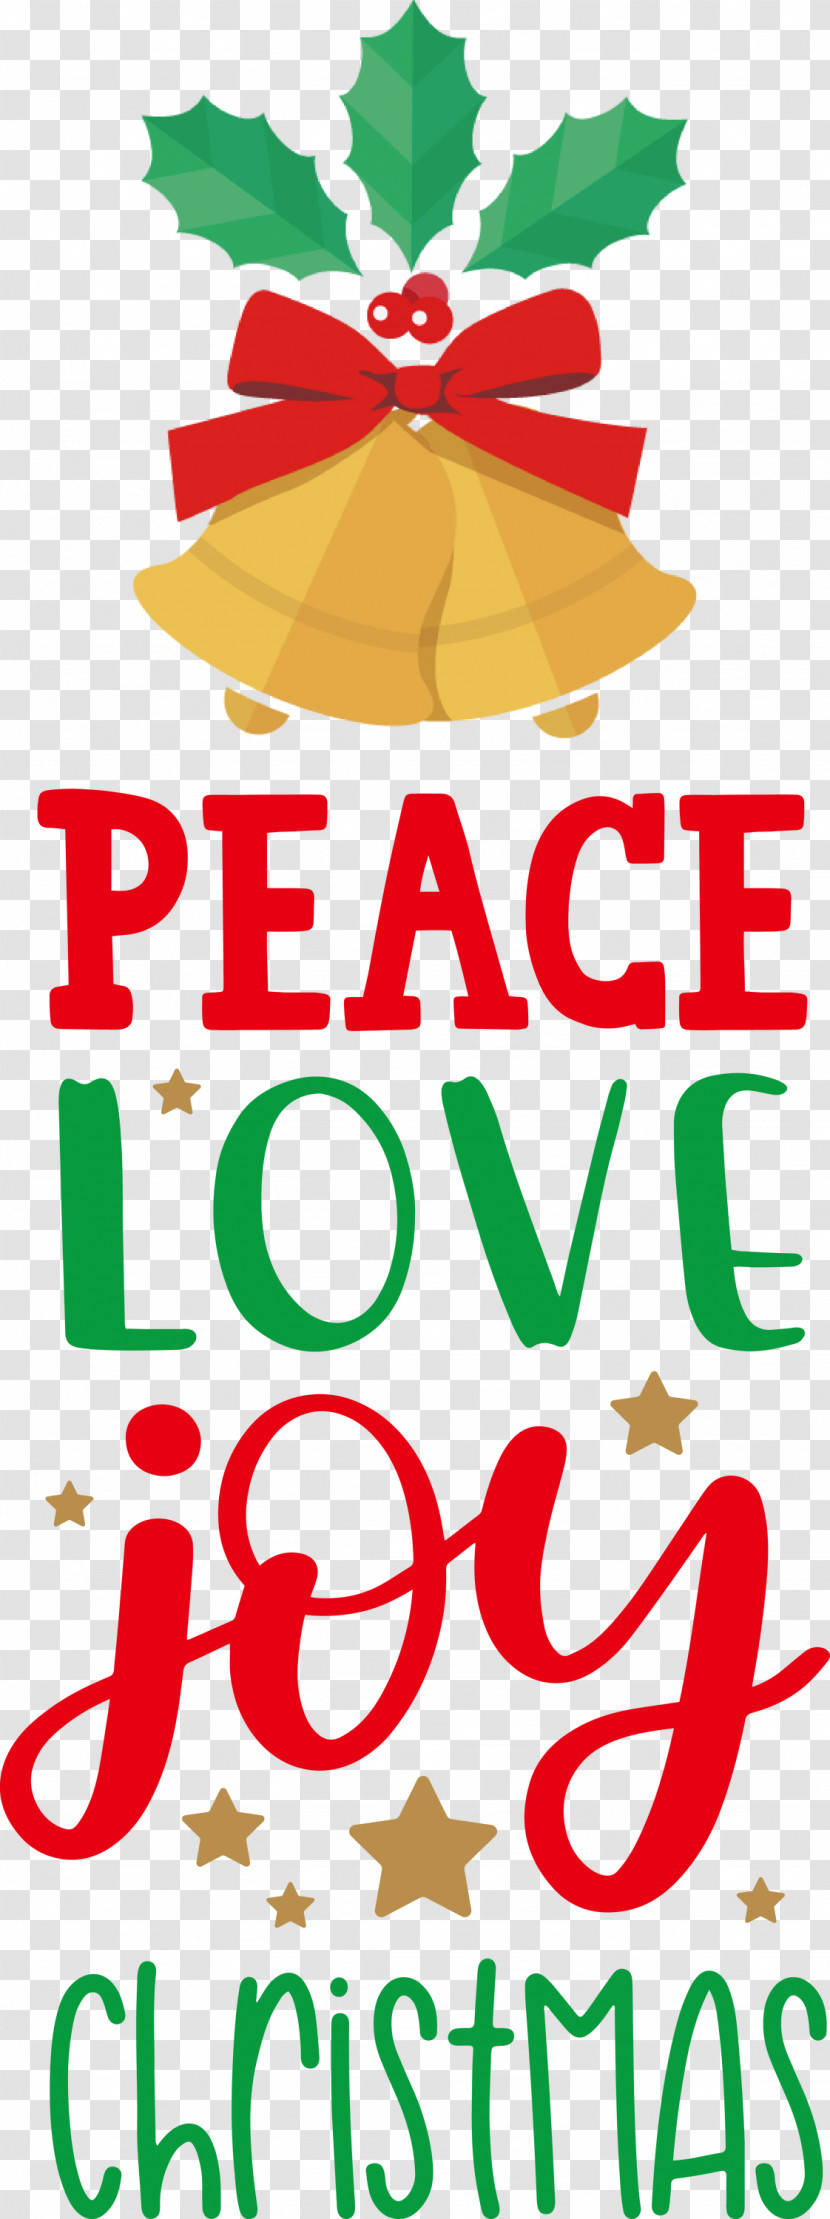 Peace Love Joy Transparent PNG